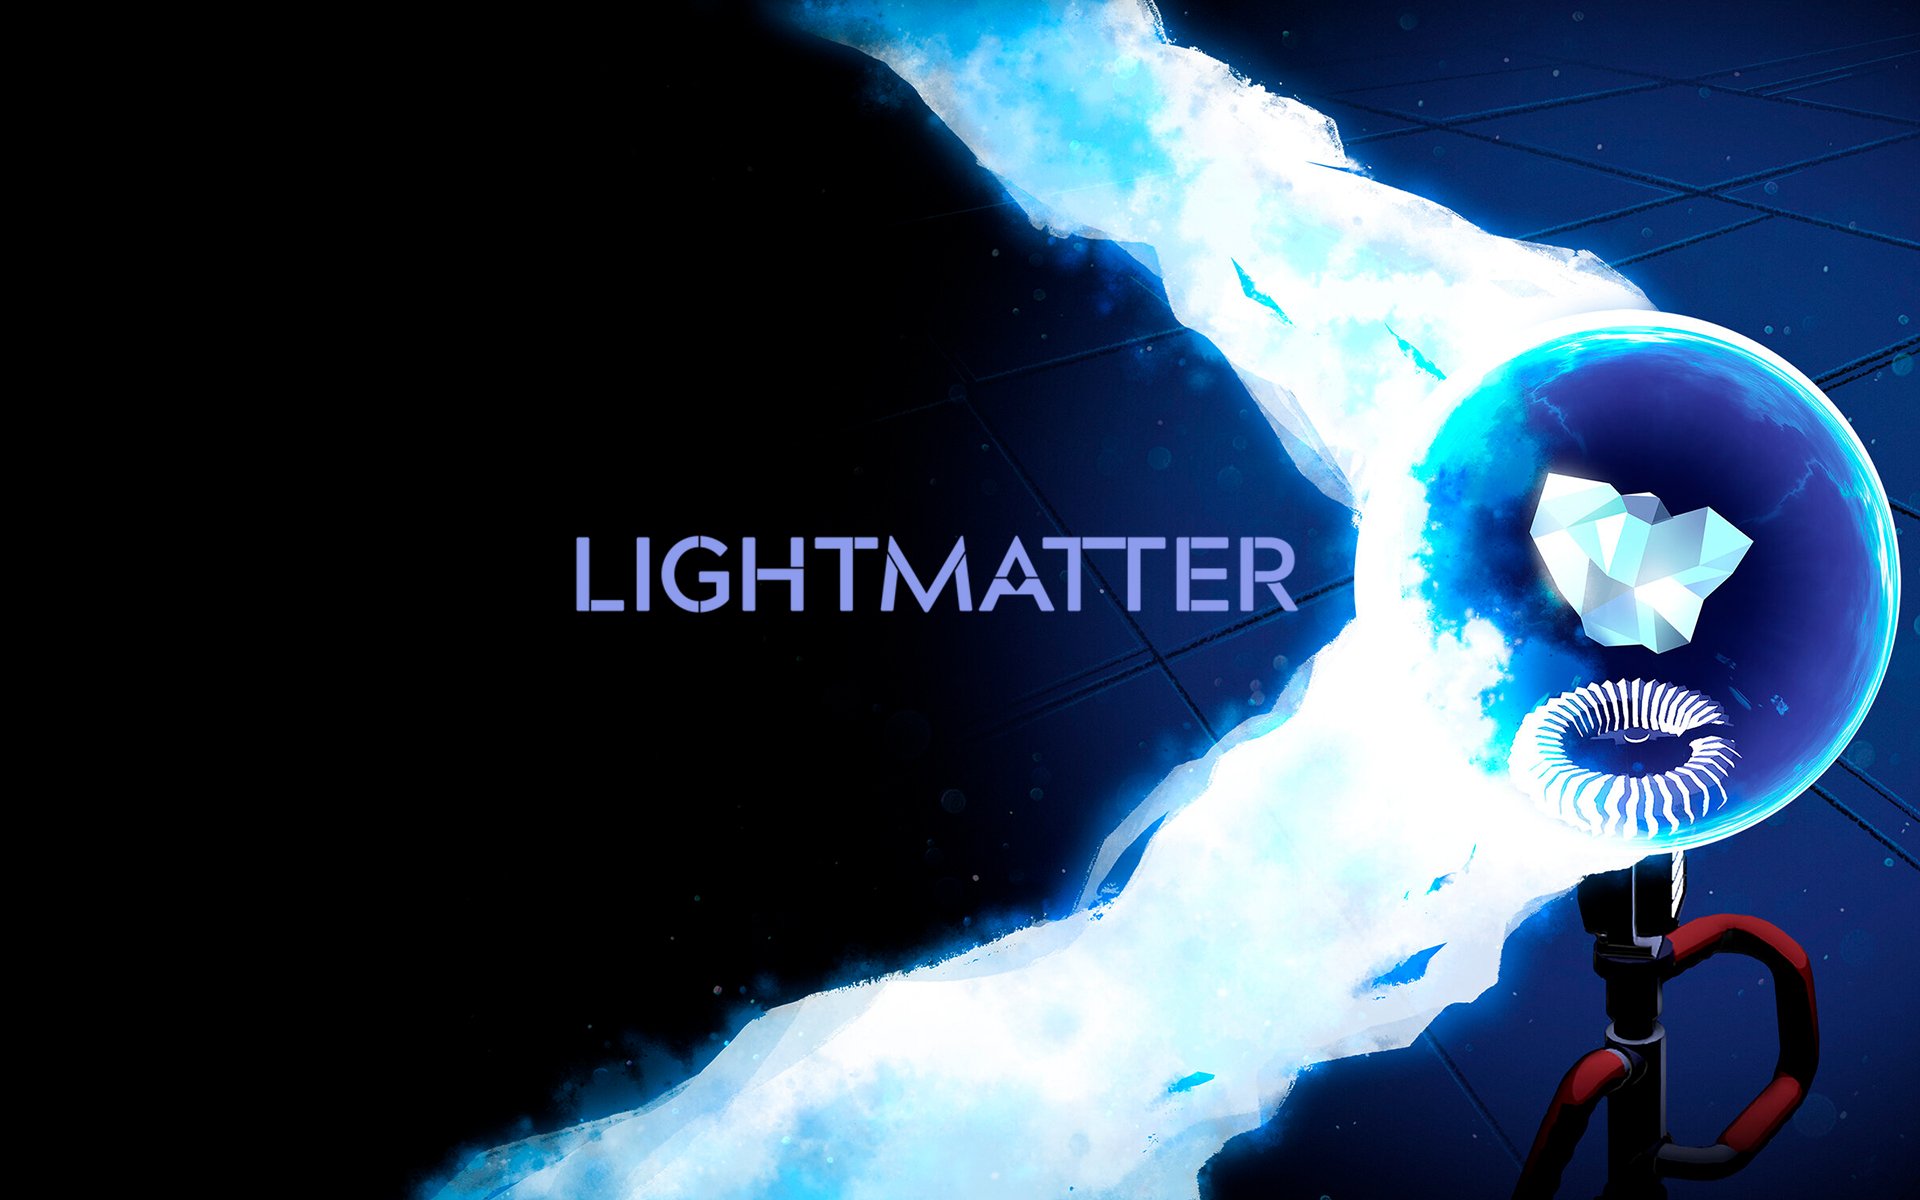 Lightmatter por R$ 37.99